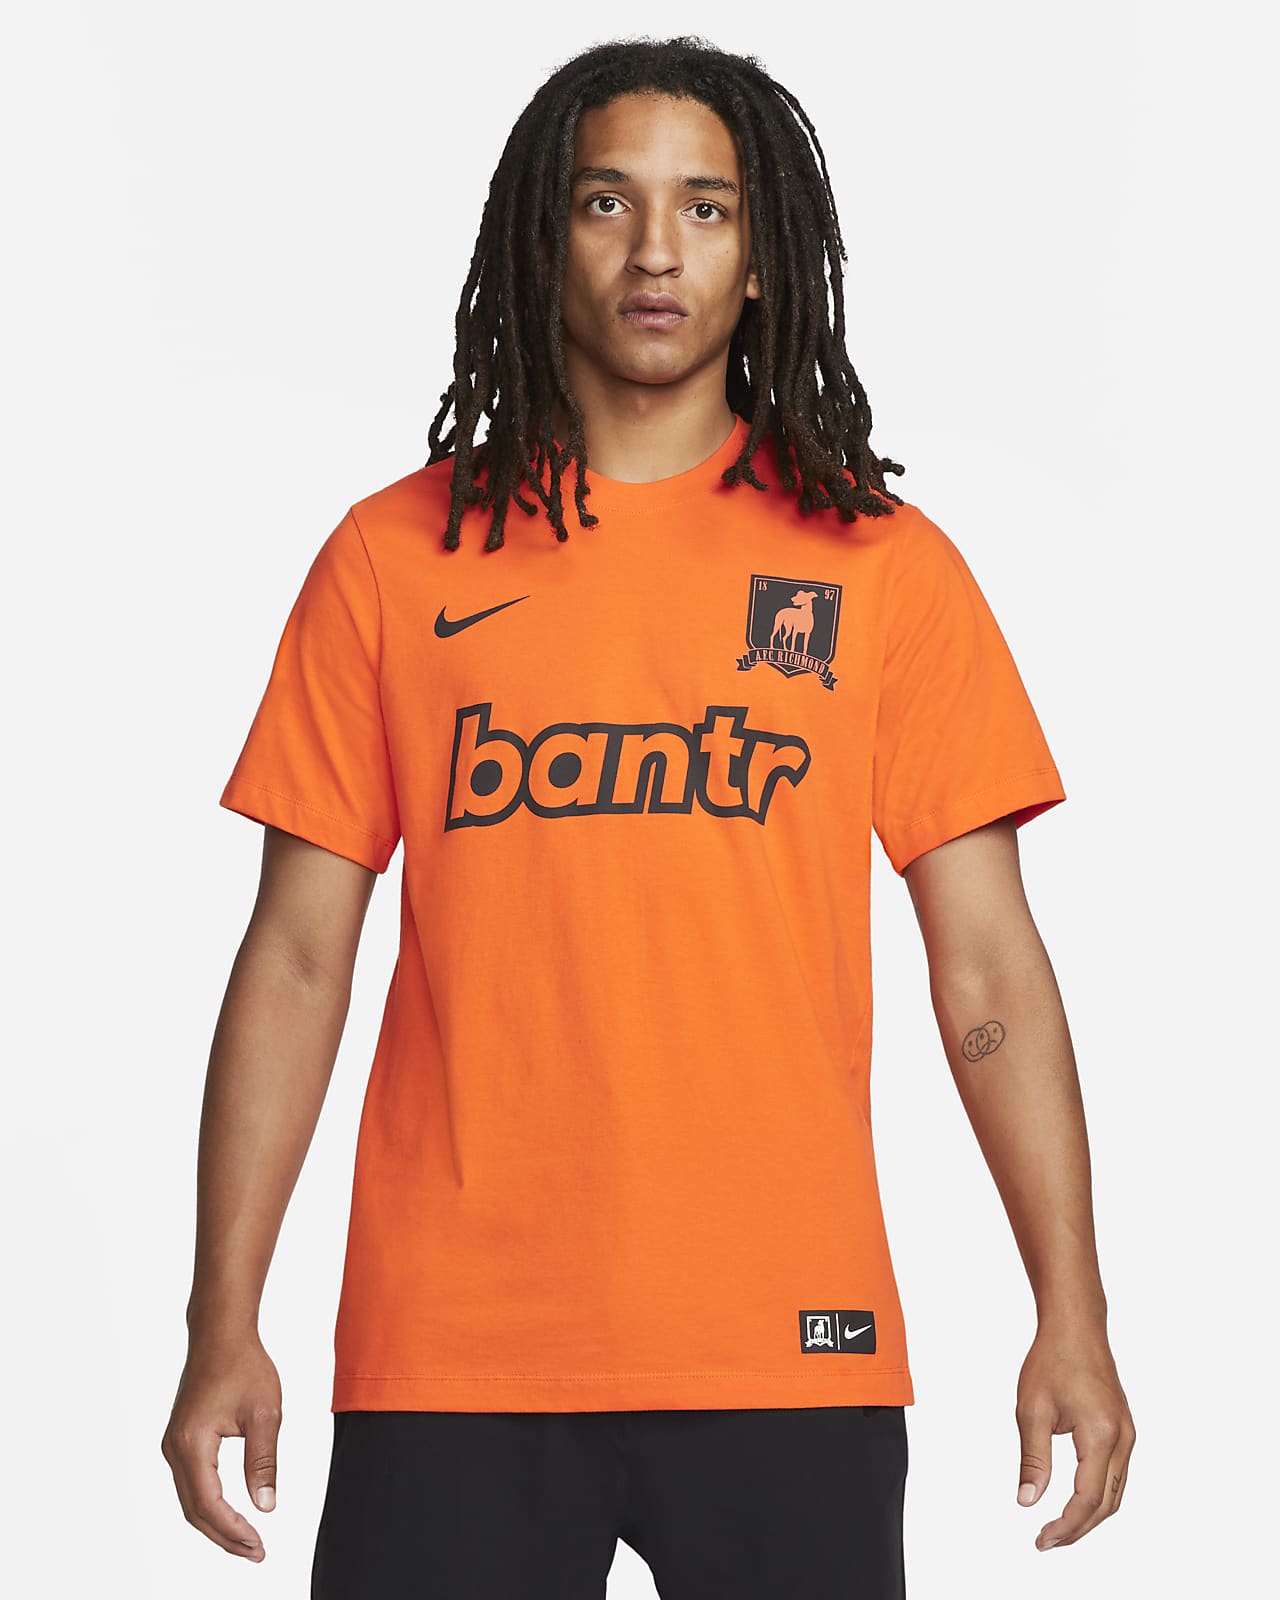 AFC Richmond Men's Nike Bantr T-Shirt